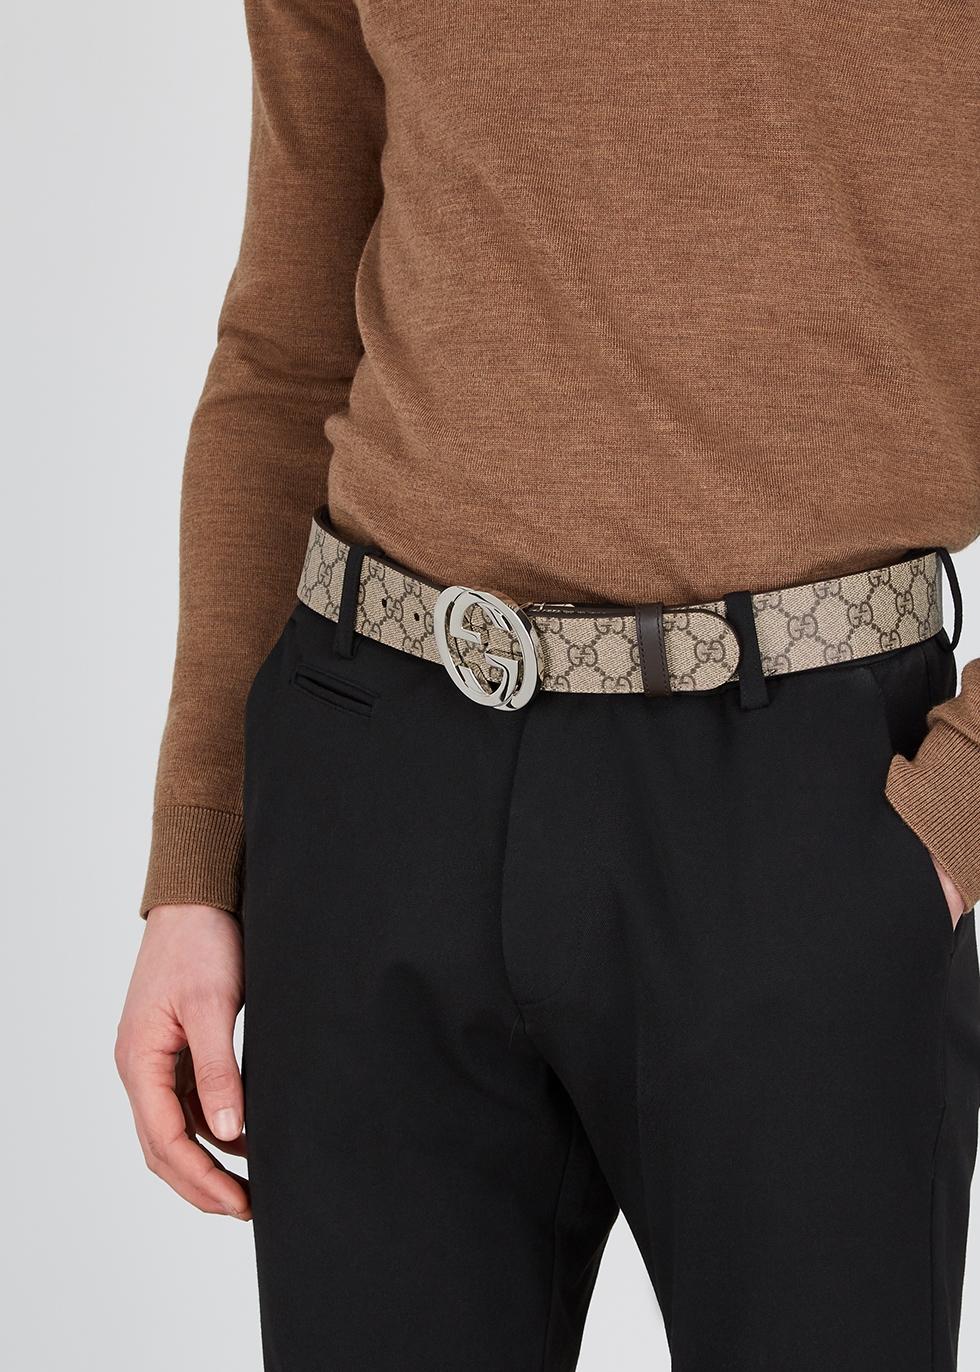 gucci belt for men